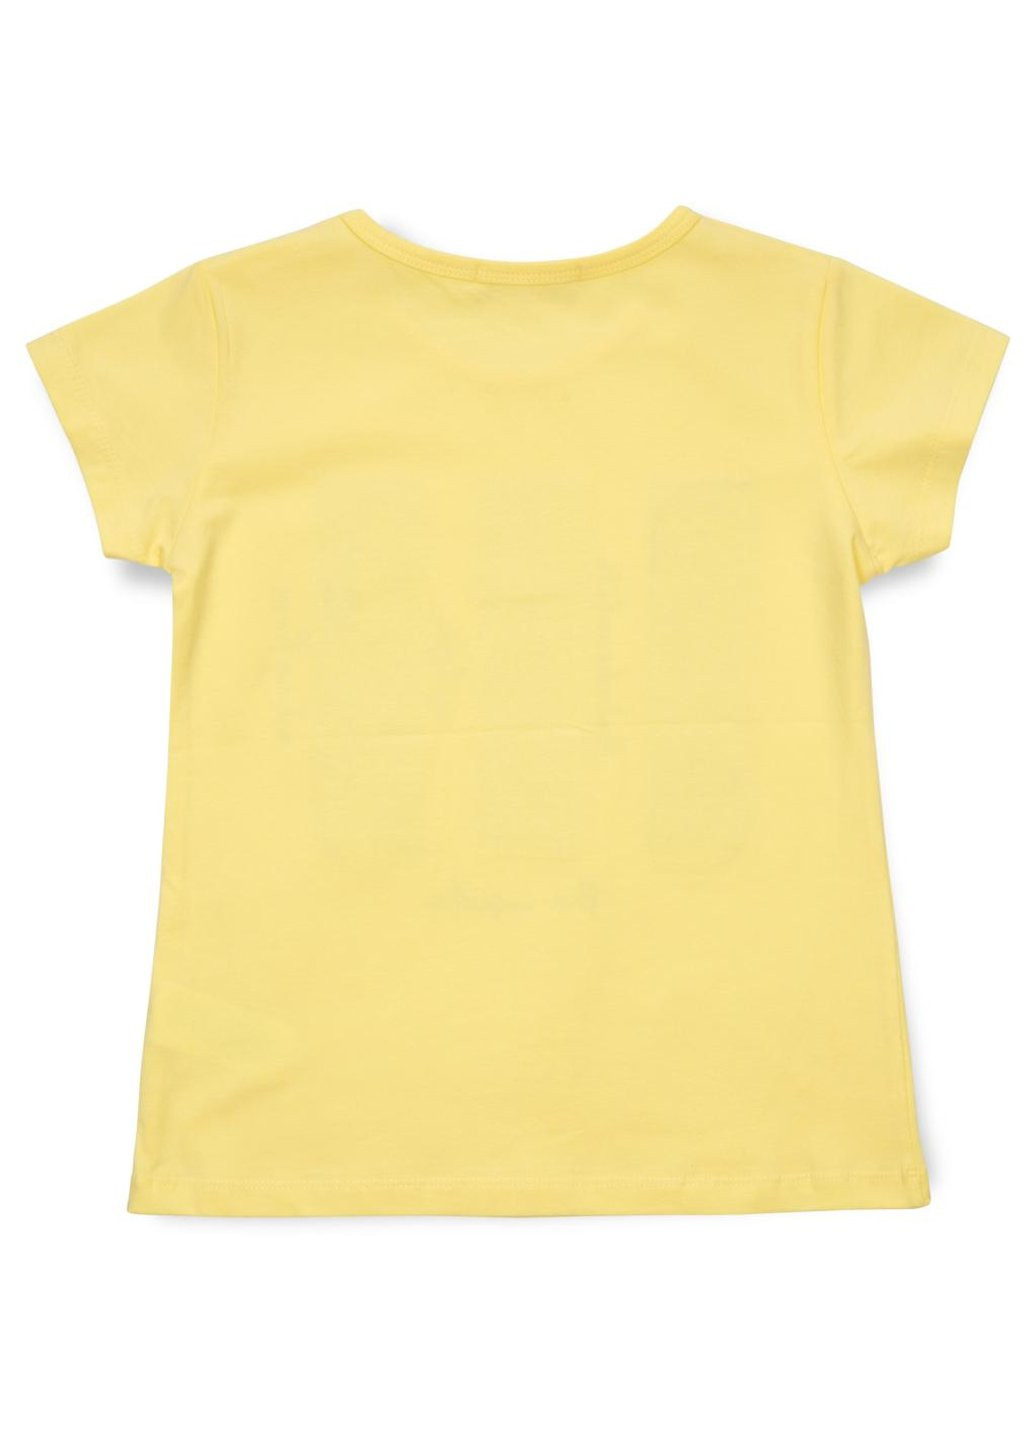 Комбінована футболка дитяча з паєтками (14299-128g-yellow) Breeze